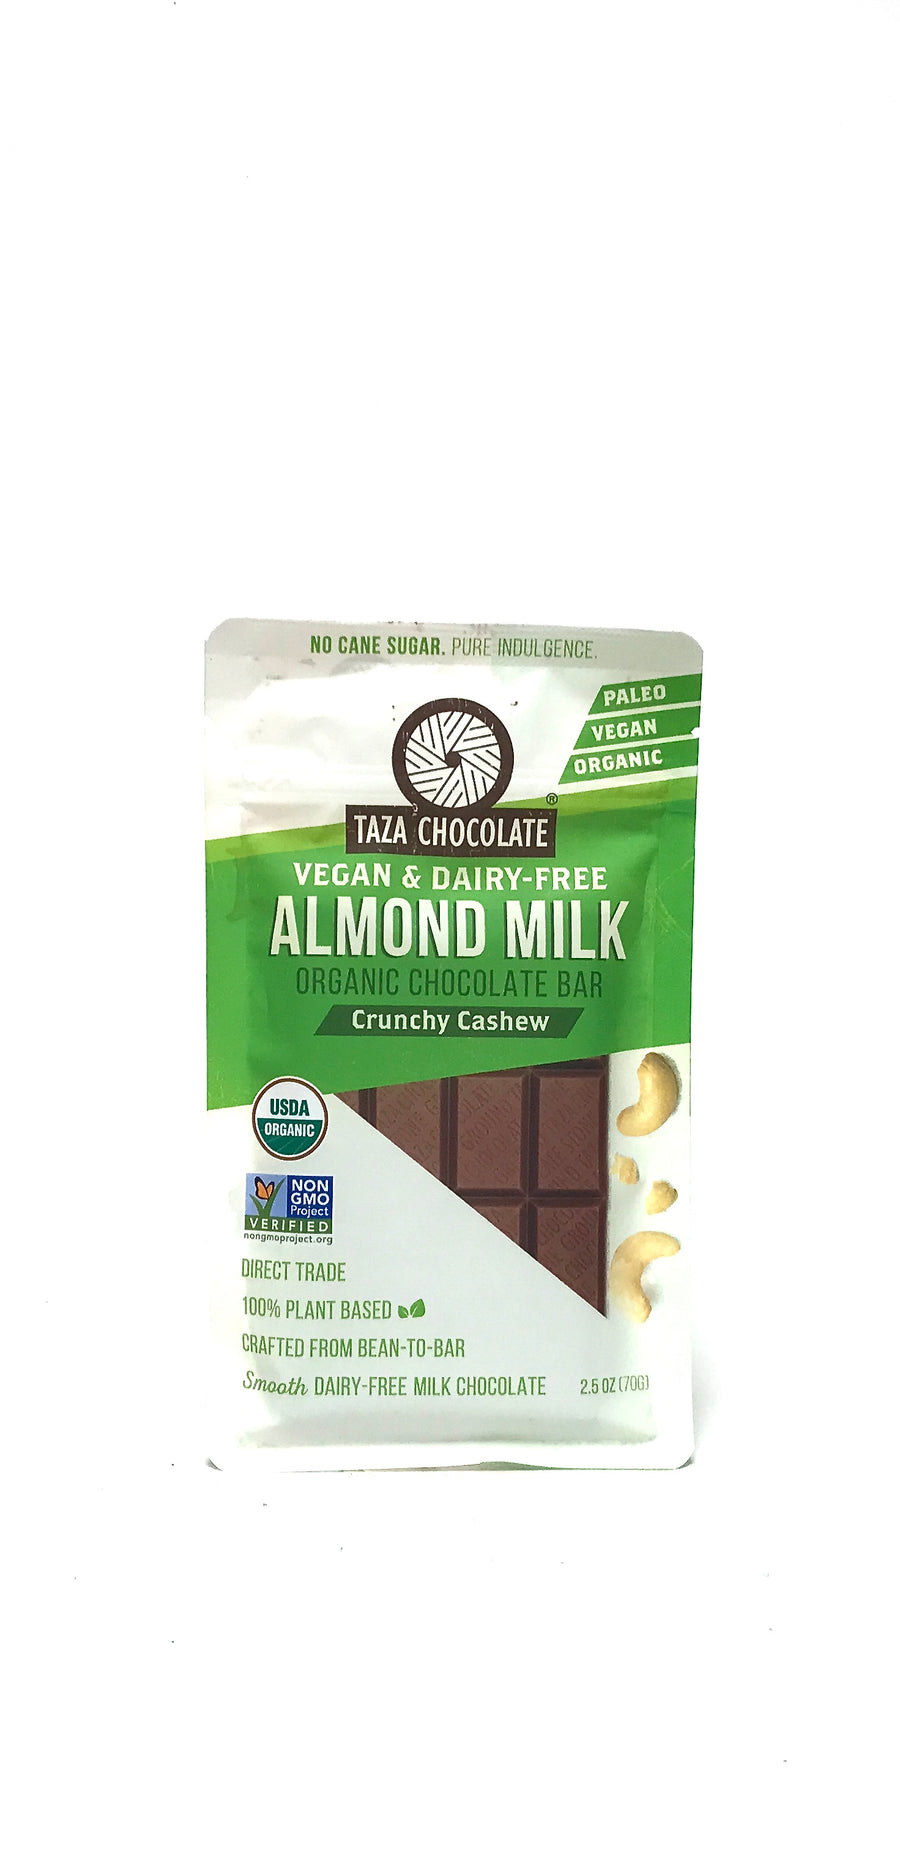 Taza Almond Milk Chocolate Bar Crunchy Cashew 2.5oz